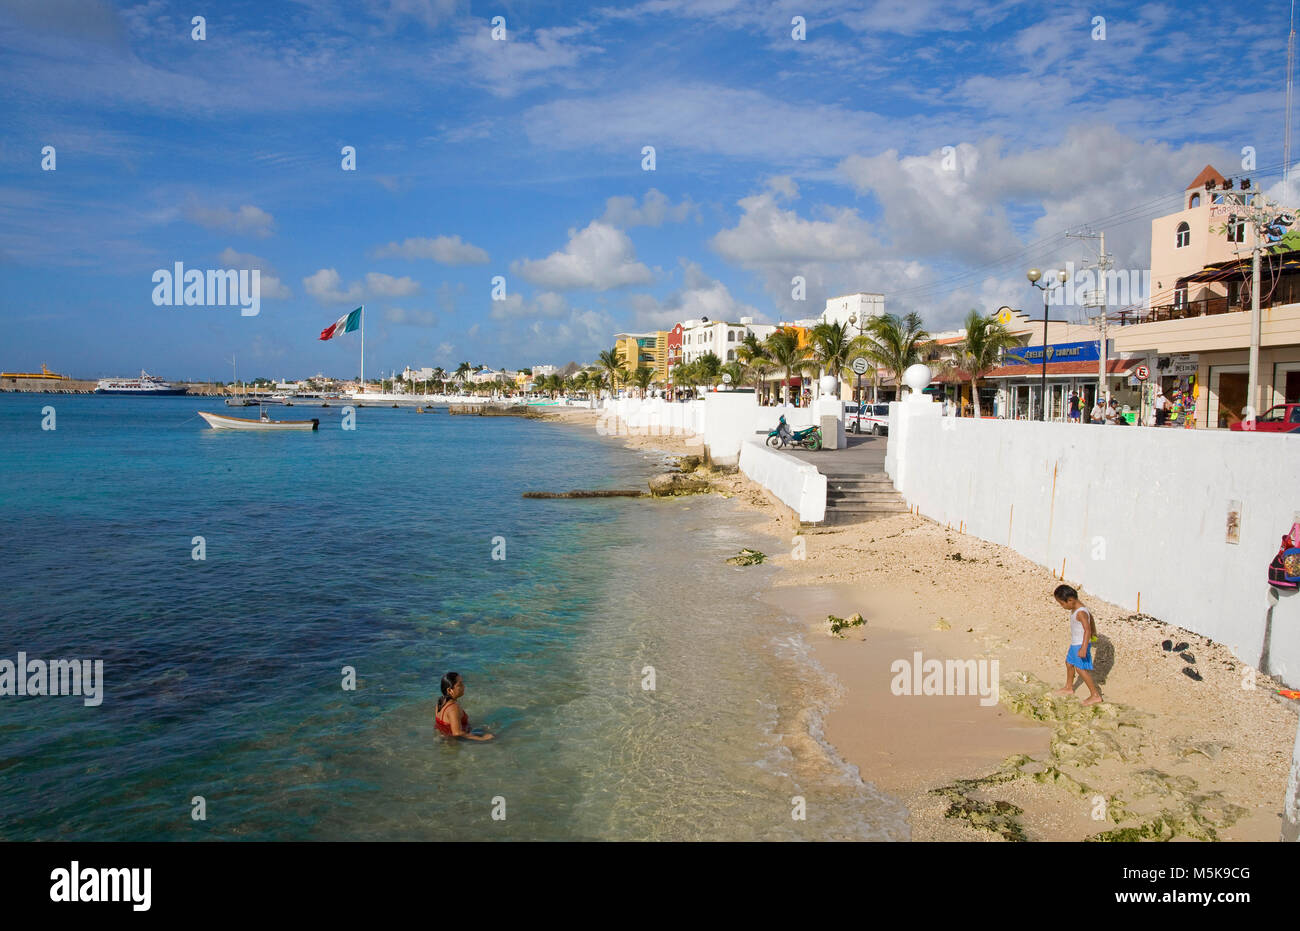 Einheimische baden am Stadtstrand von San Miguel, Cozumel, Mexiko, Karibik | Einheimischen Baden am Strand von San Miguel, Cozumel, Mexiko, der Karibik Stockfoto